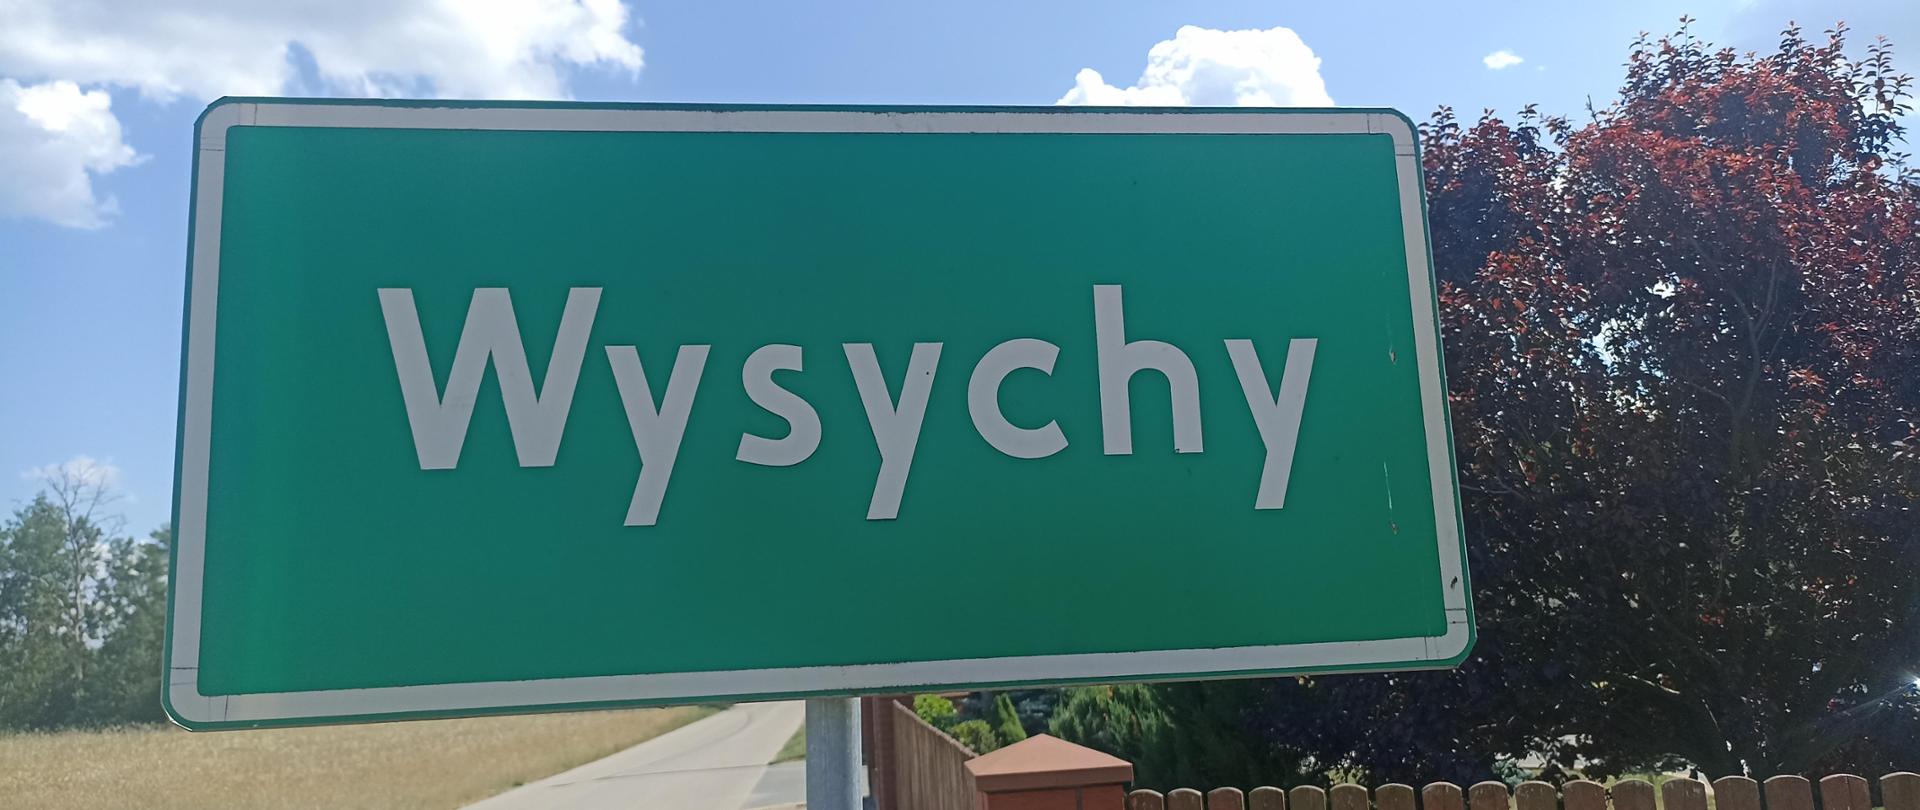 Prostokątna zielona tablica drogowa z nazwą miejscowości Wysychy